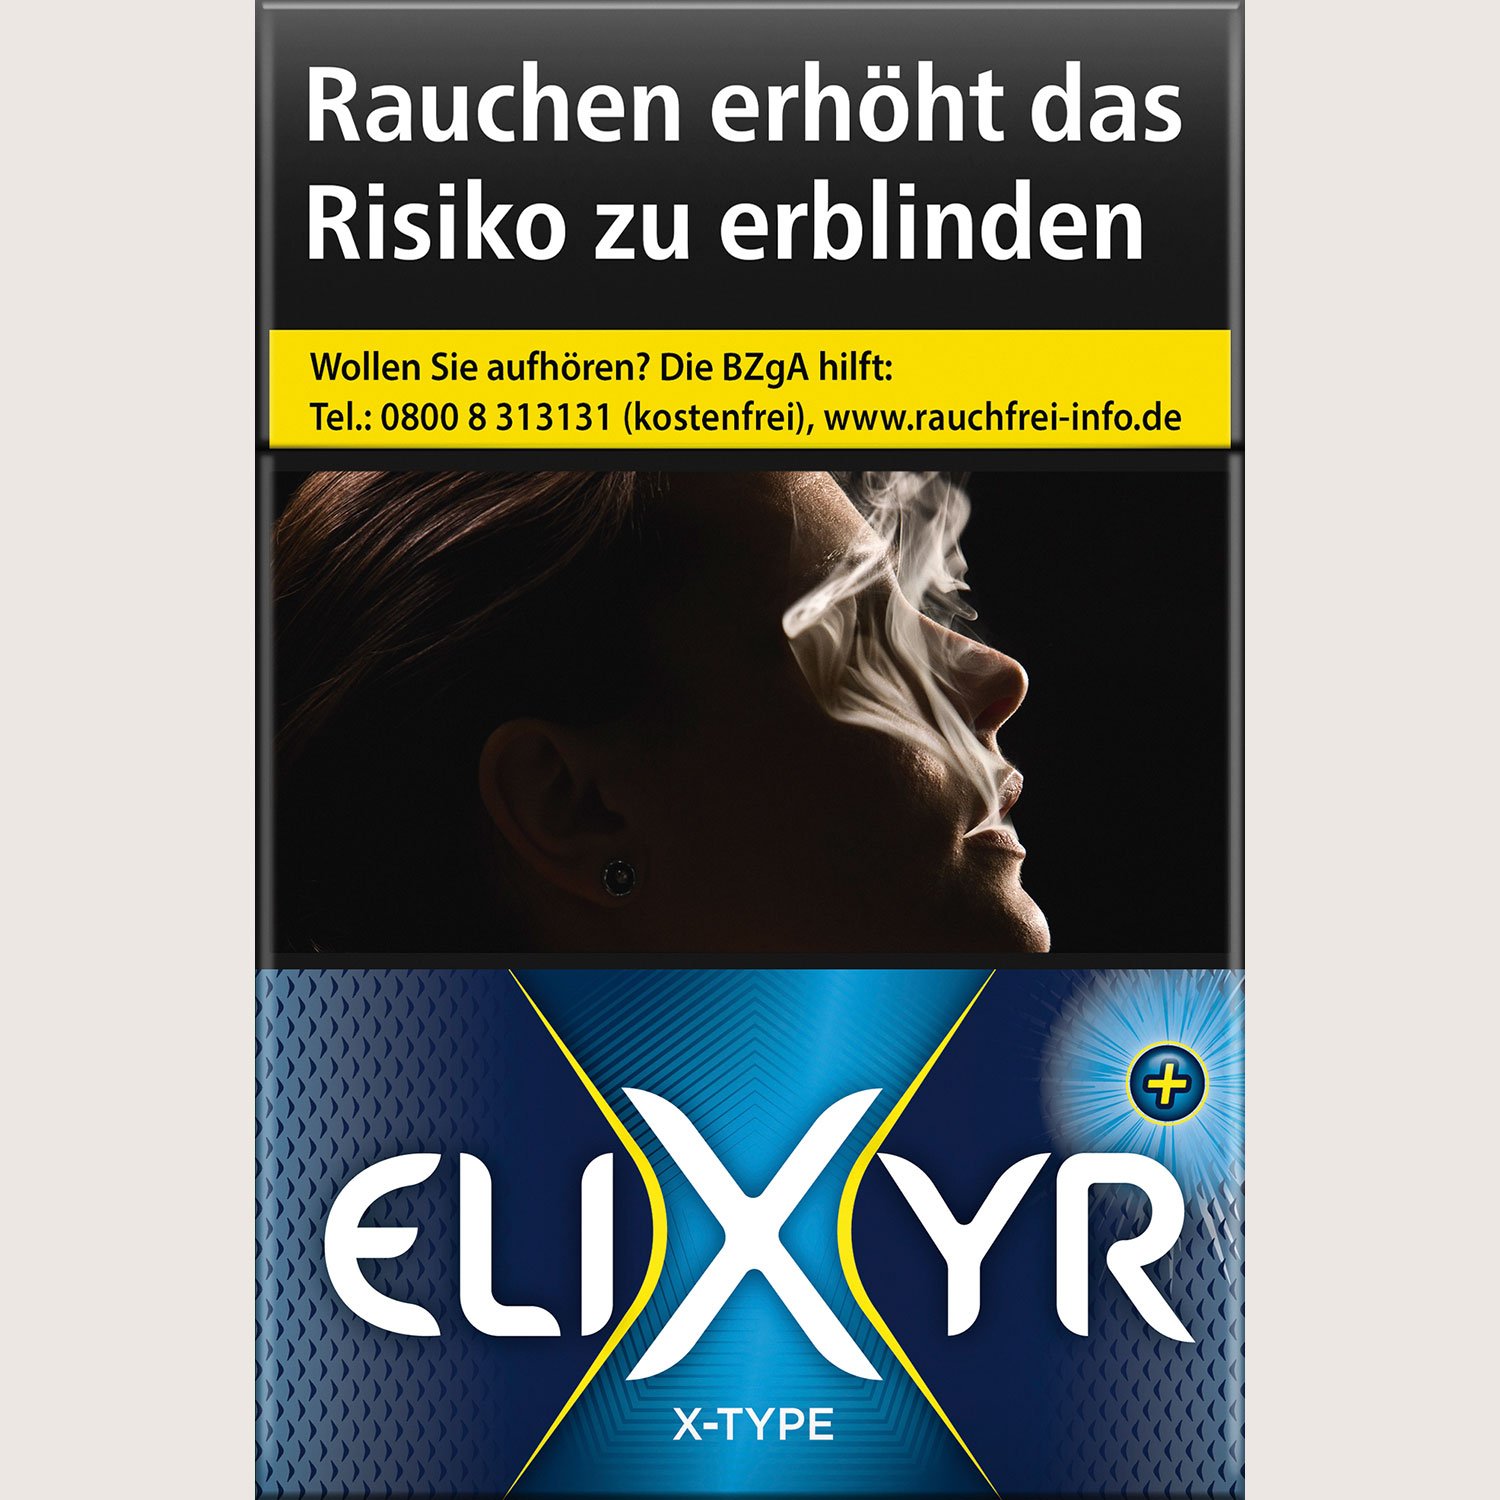 Elixyr Plus X-Type 8,00 €